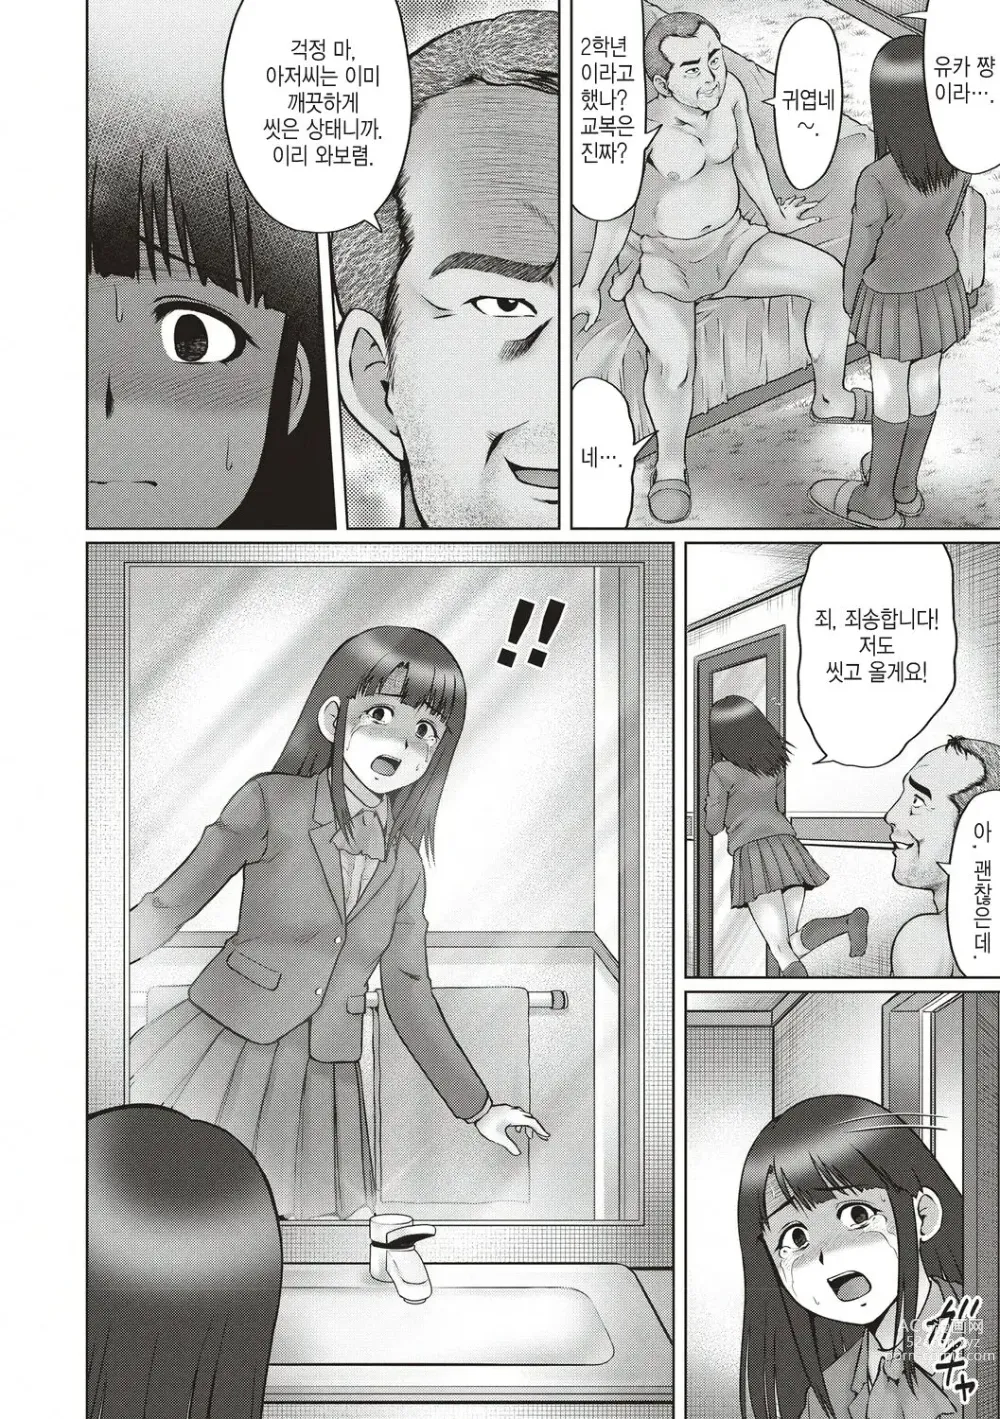 Page 4 of manga 기나긴 밤... -전편-